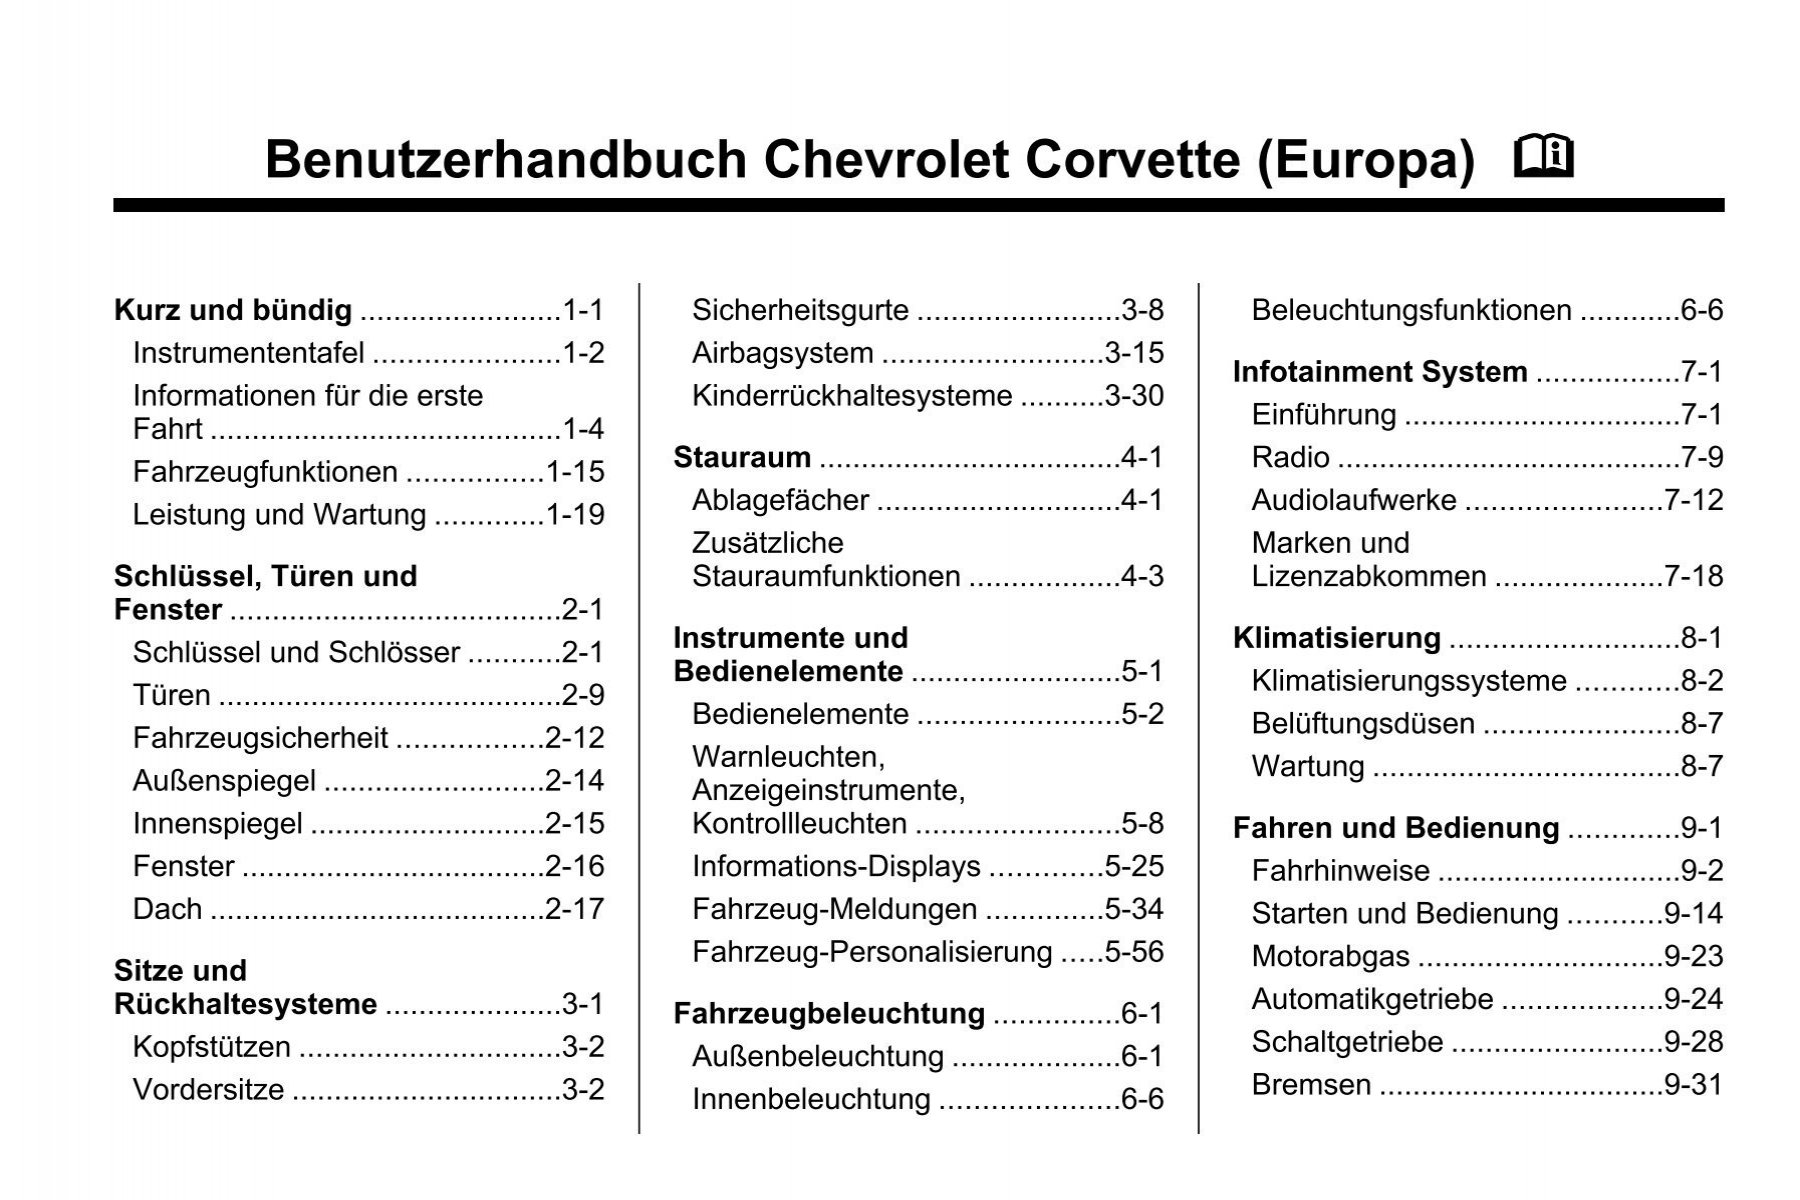 Benutzerhandbuch Chevrolet Corvette (Europa) M